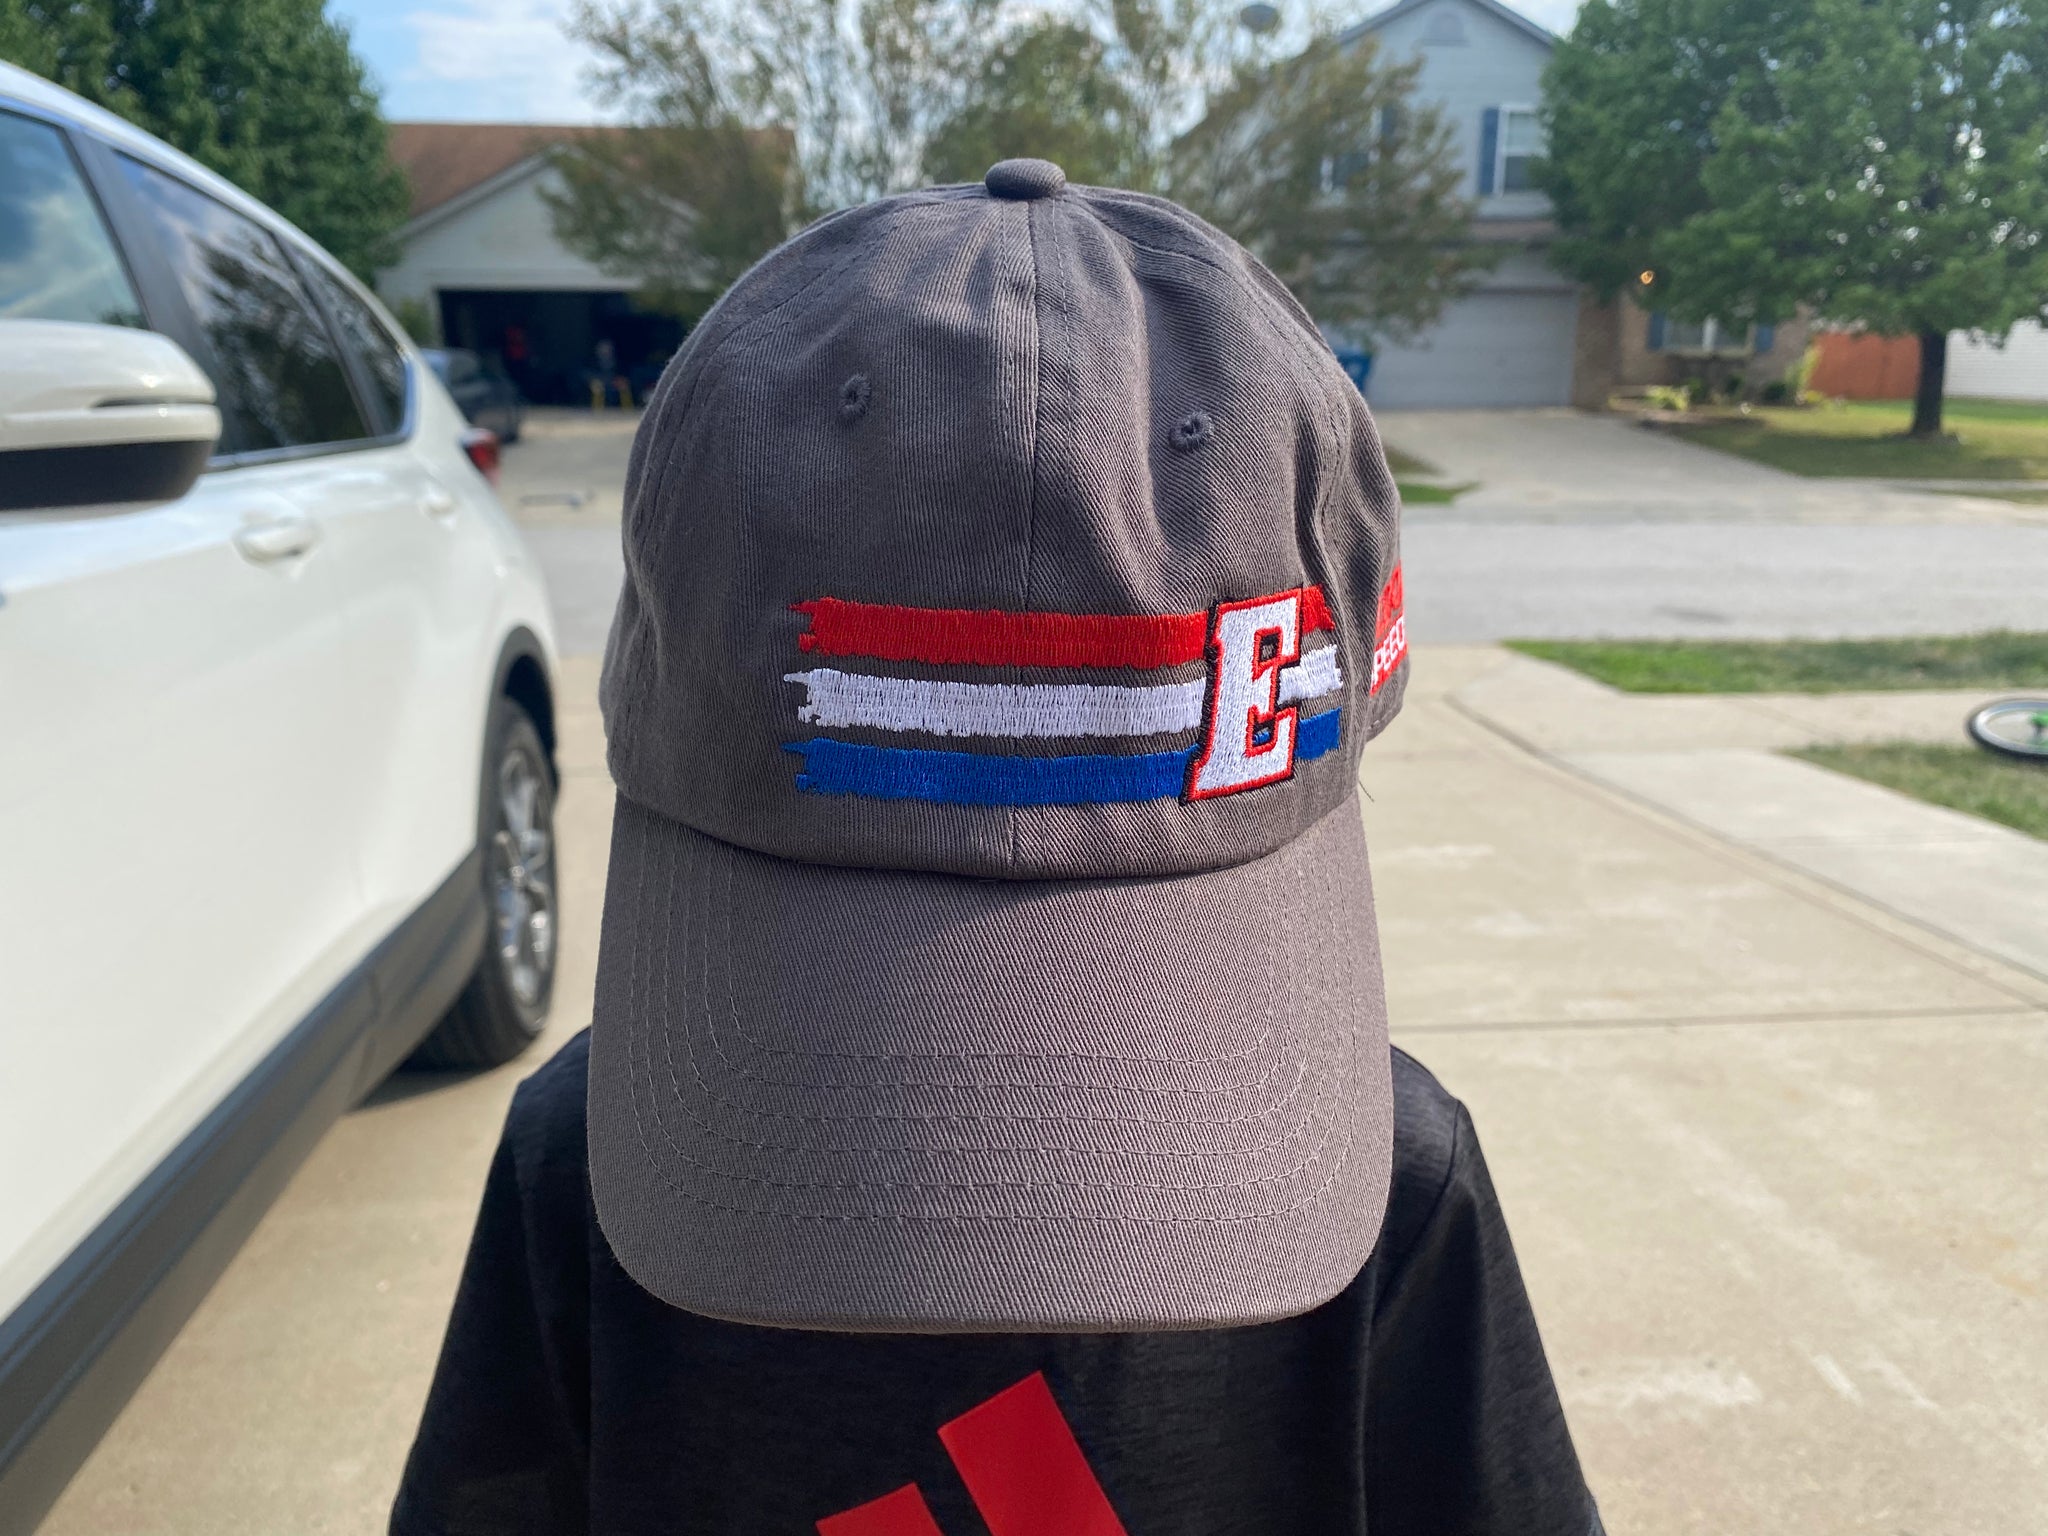 Eldora Speedway Gray Dad Hat